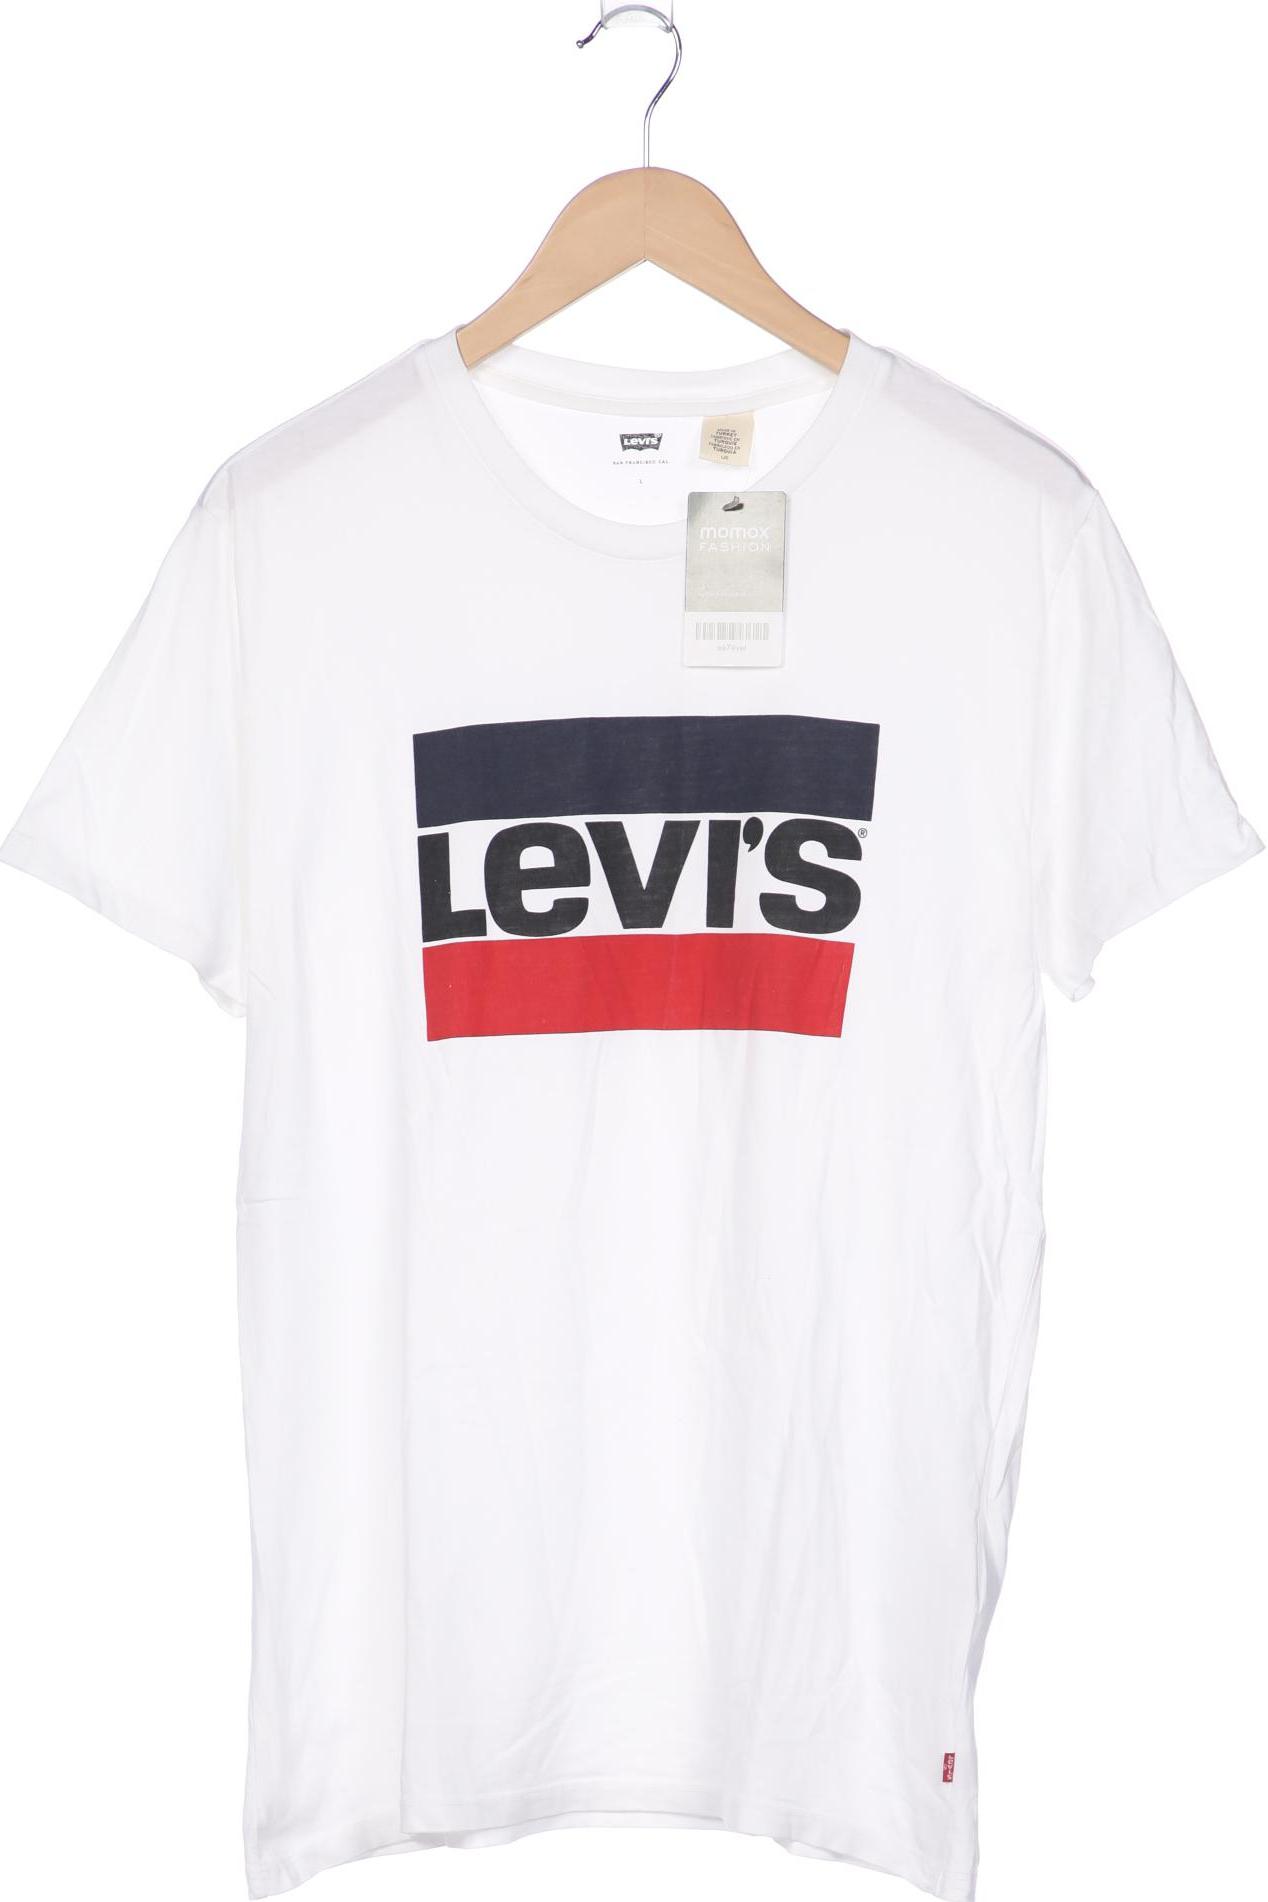 Levis Herren T-Shirt, weiß von Levis